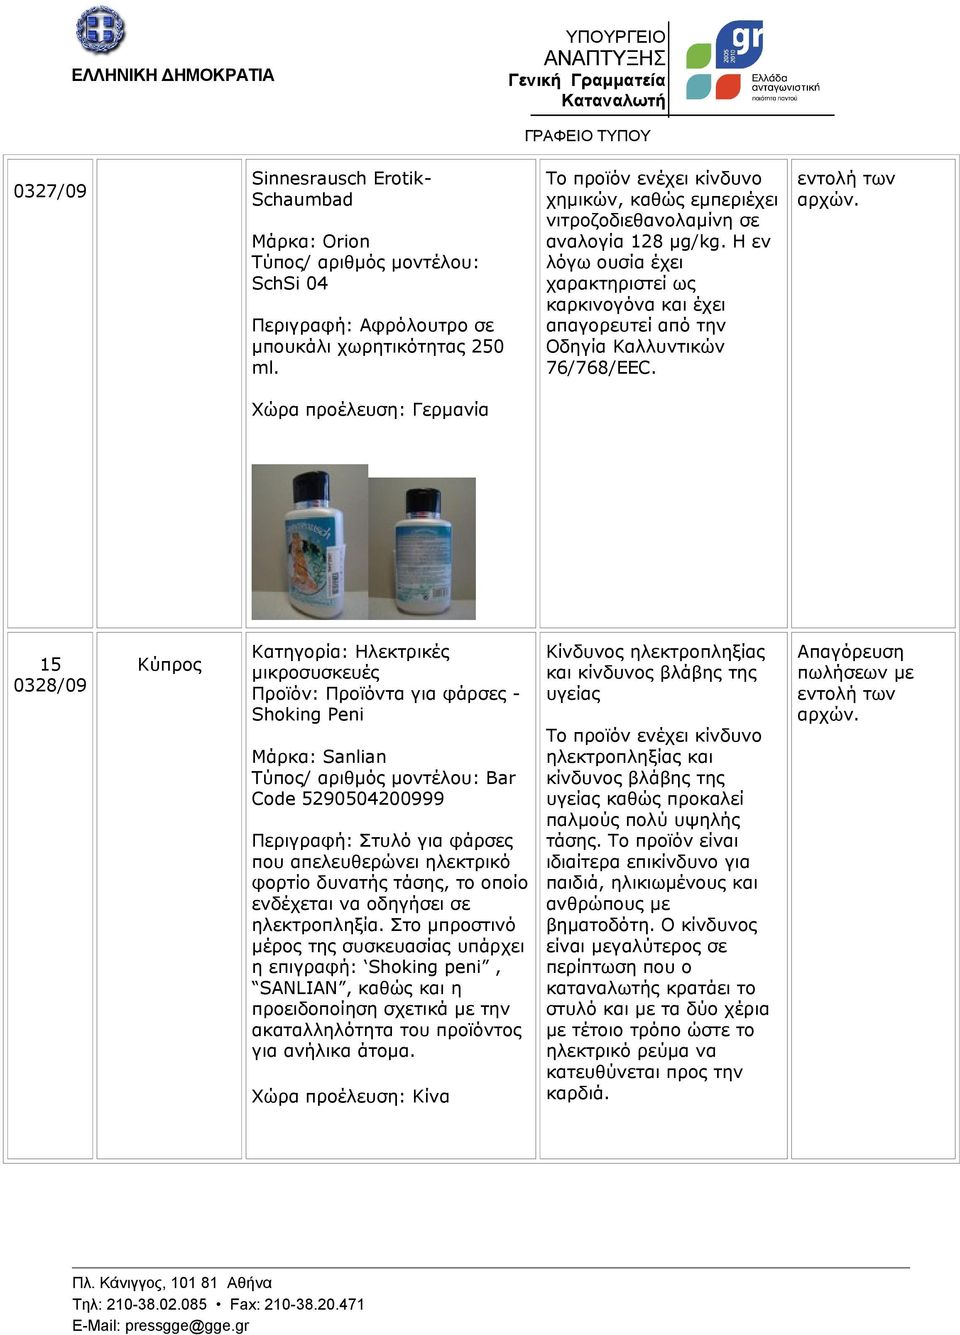 Χώρα προέλευση: Γερμανία 15 0328/09 Κύπρος Κατηγορία: Ηλεκτρικές μικροσυσκευές Προϊόν: Προϊόντα για φάρσες - Shoking Peni Μάρκα: Sanlian Bar Code 5290504200999 Περιγραφή: Στυλό για φάρσες που